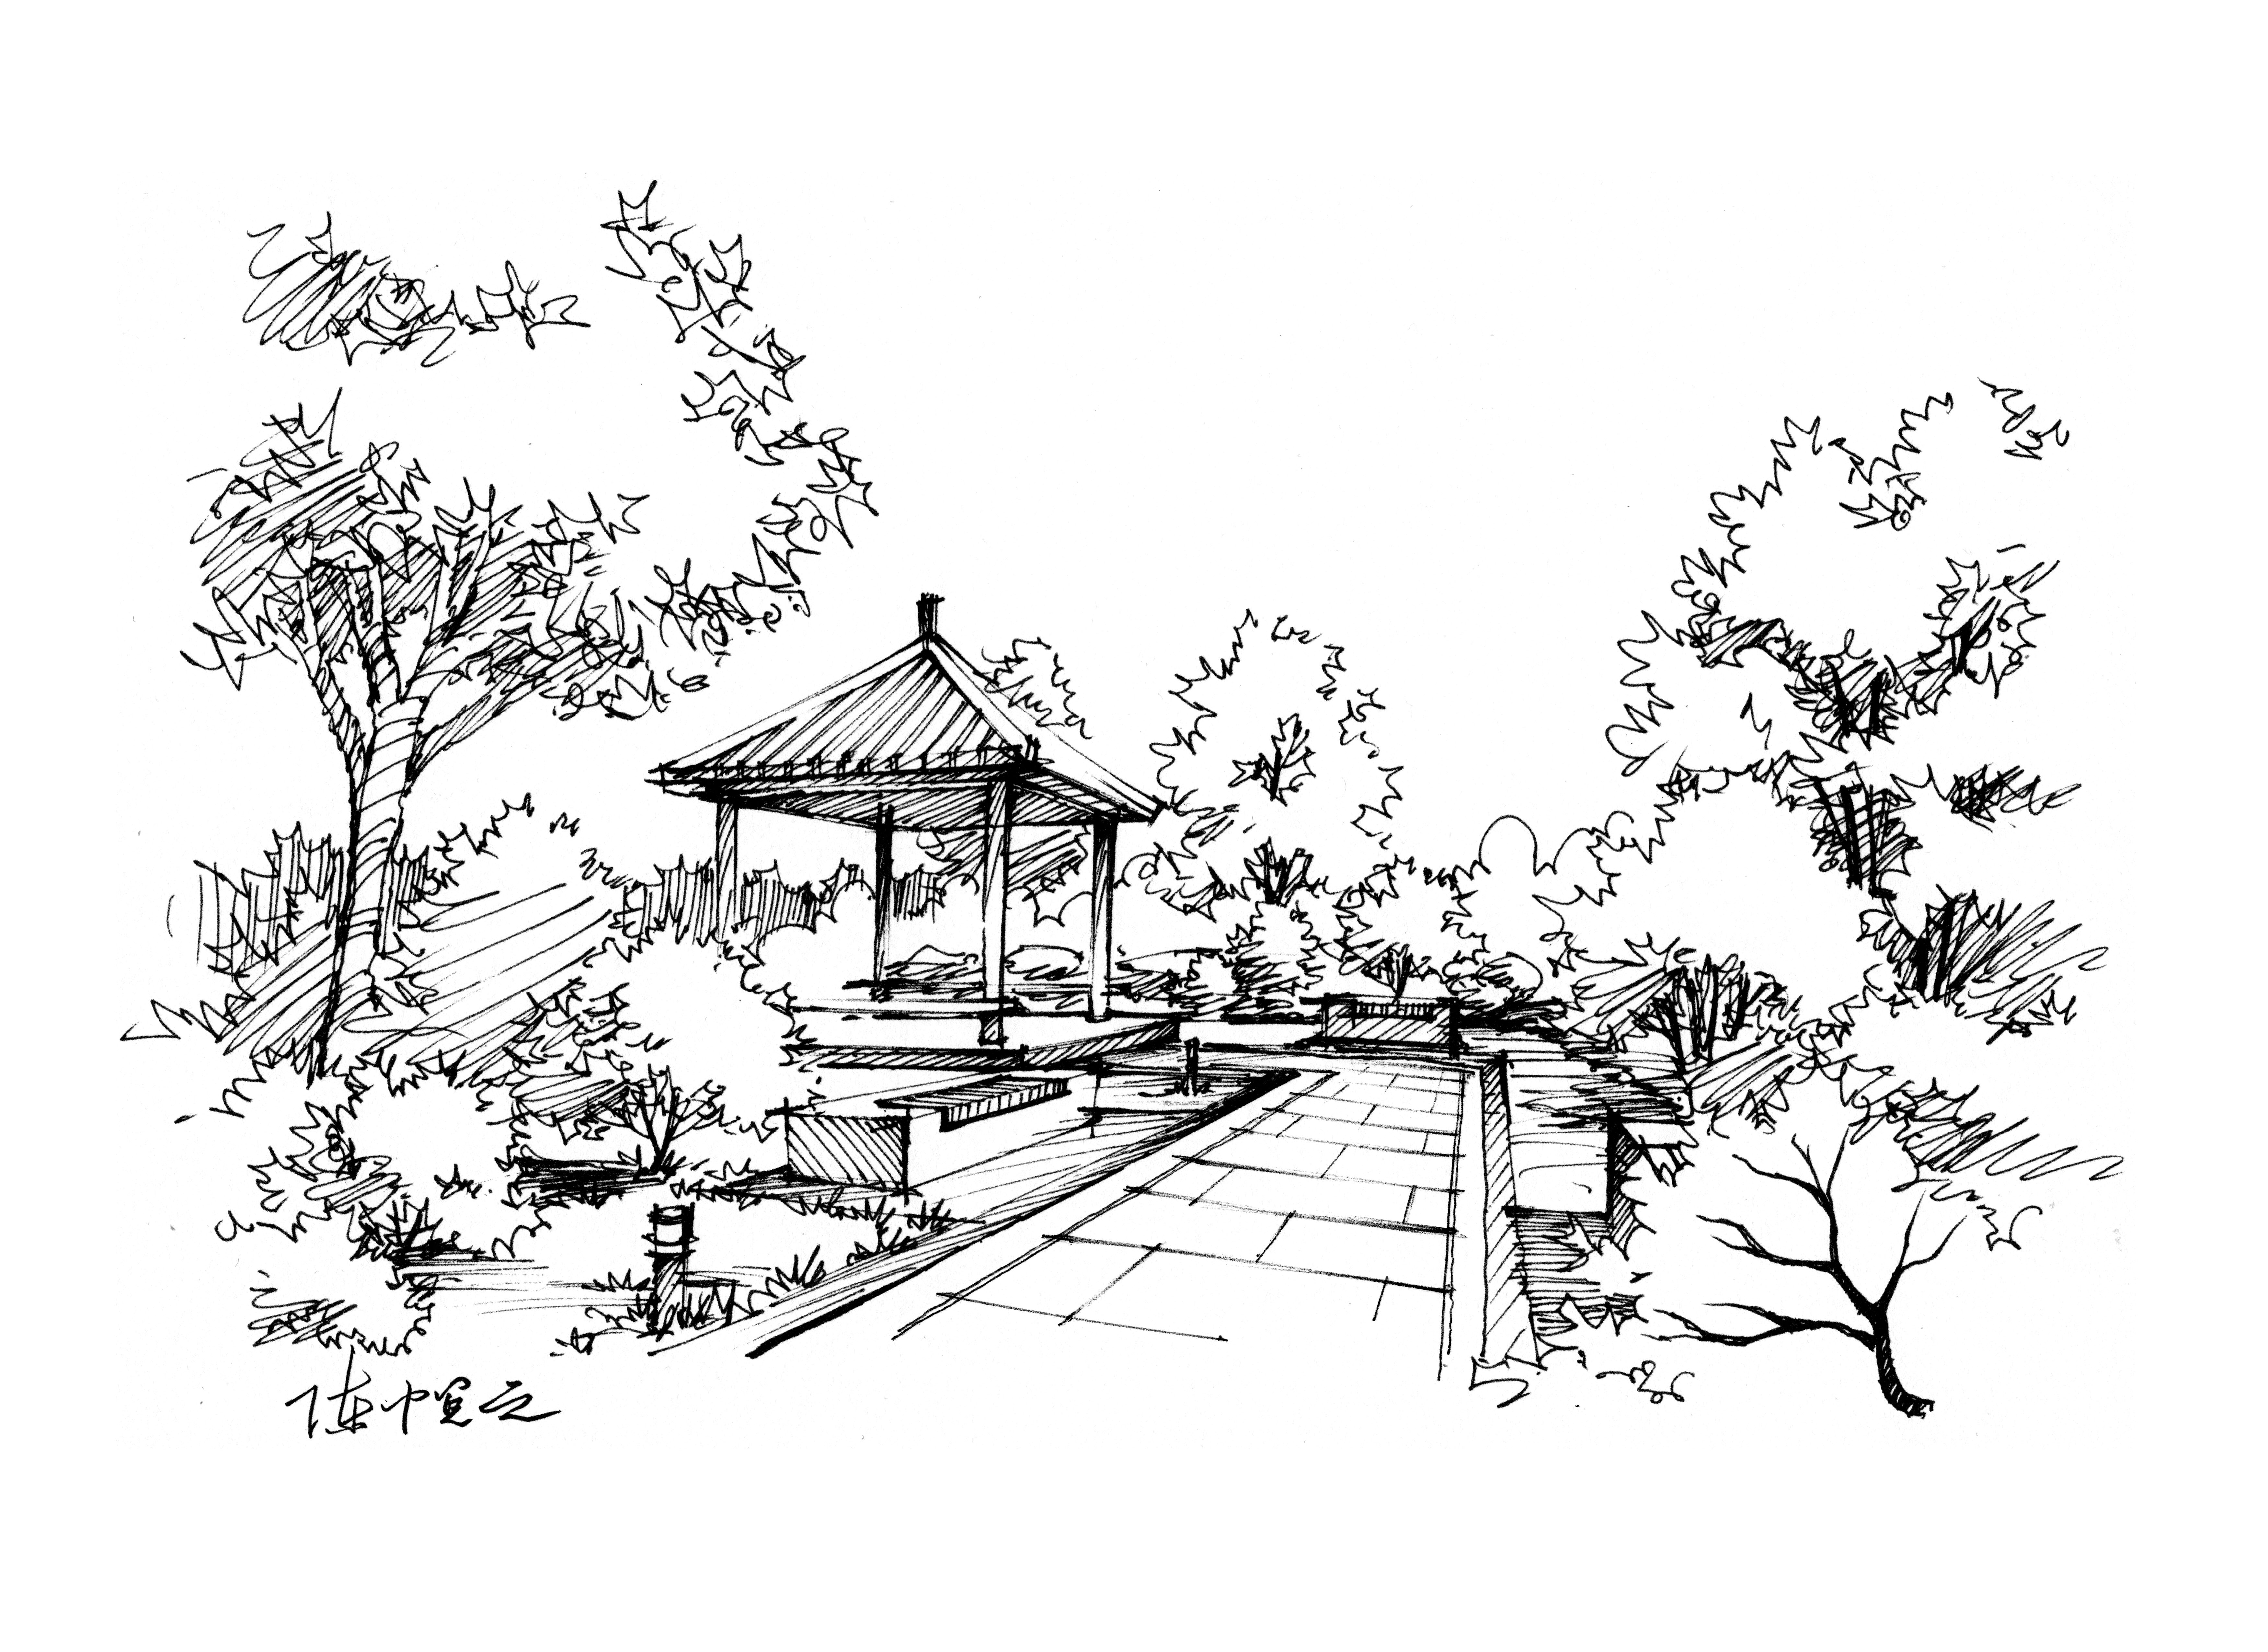 【青岛手绘】公园凉亭景观设计手绘 - 风景园林手绘